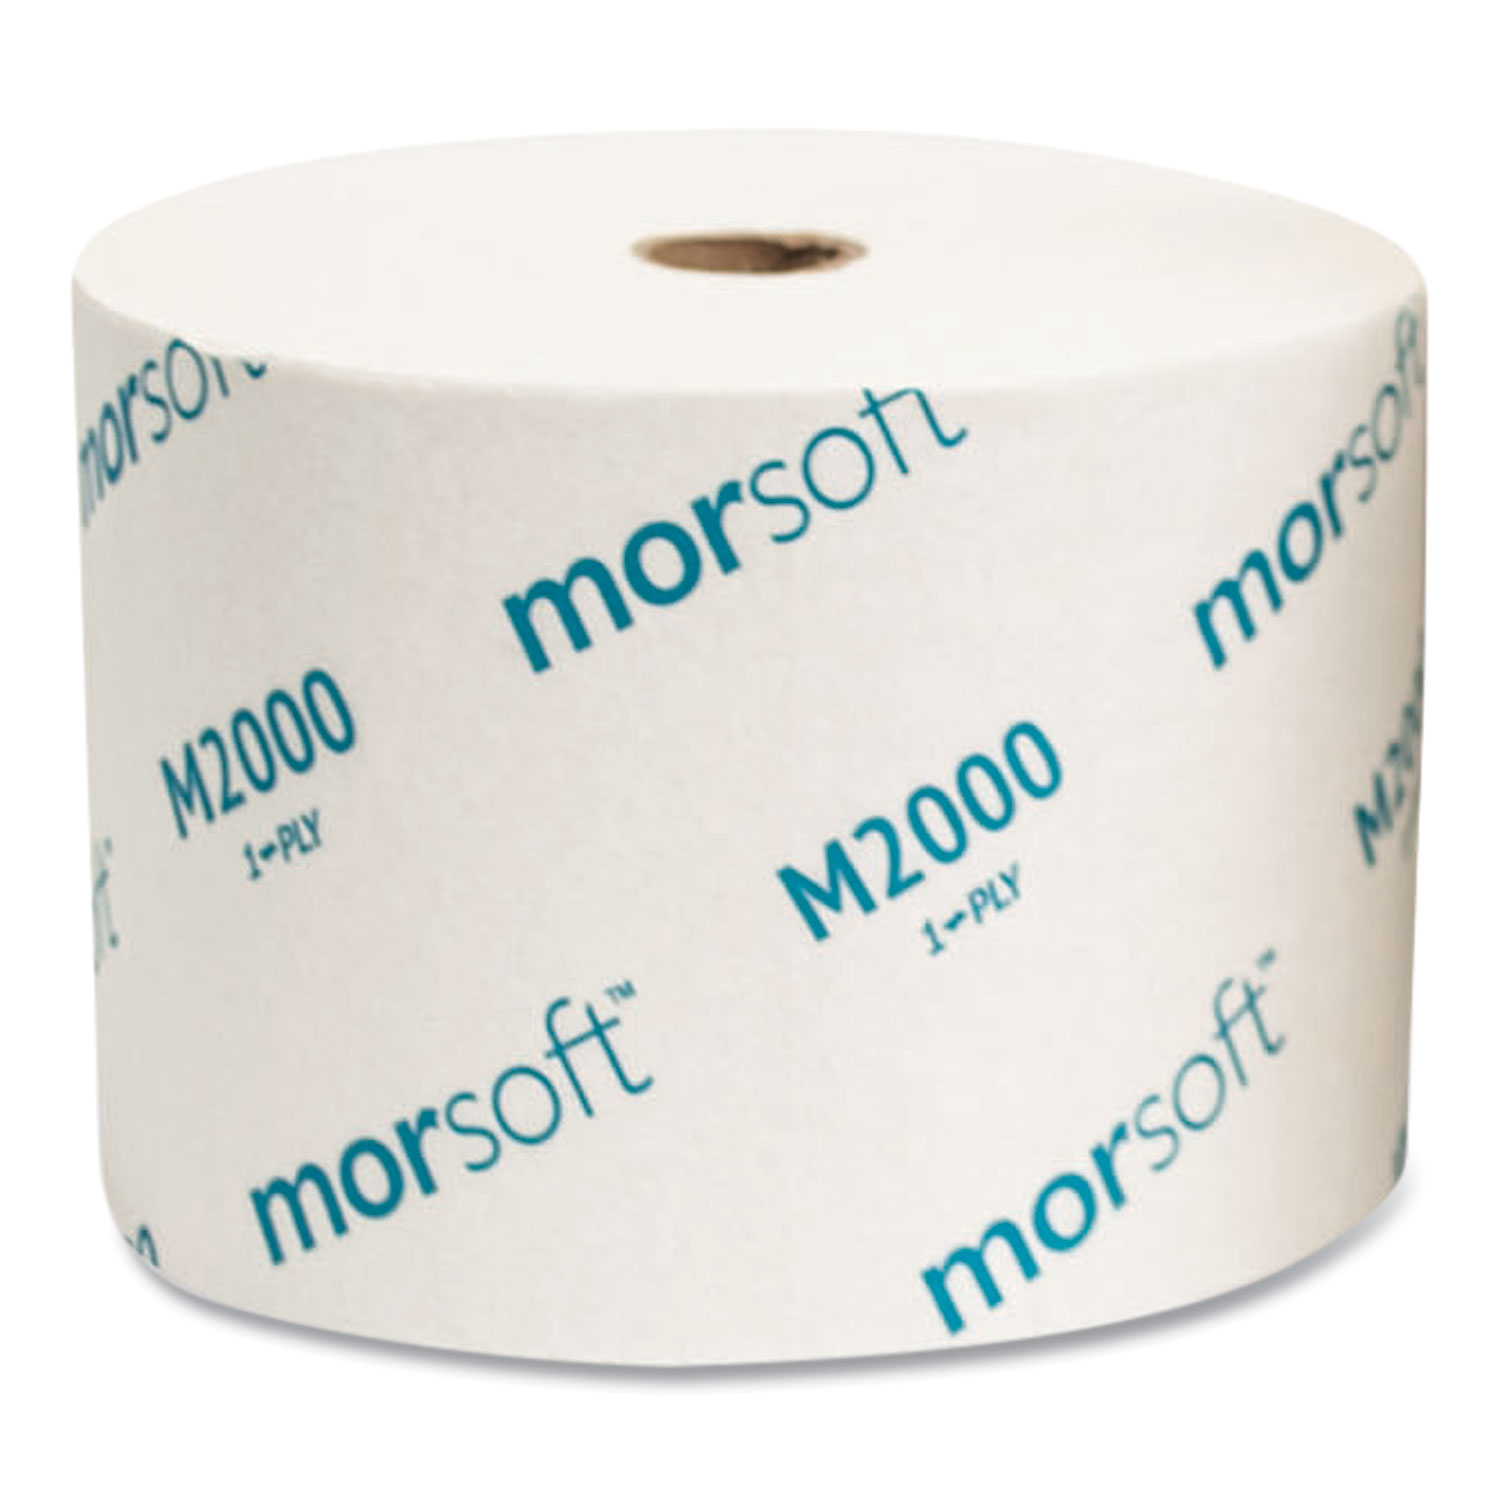 Morcon Tissue Small Core Bath Tissue, Septic Safe, 1-Ply, White, 2,000 ...